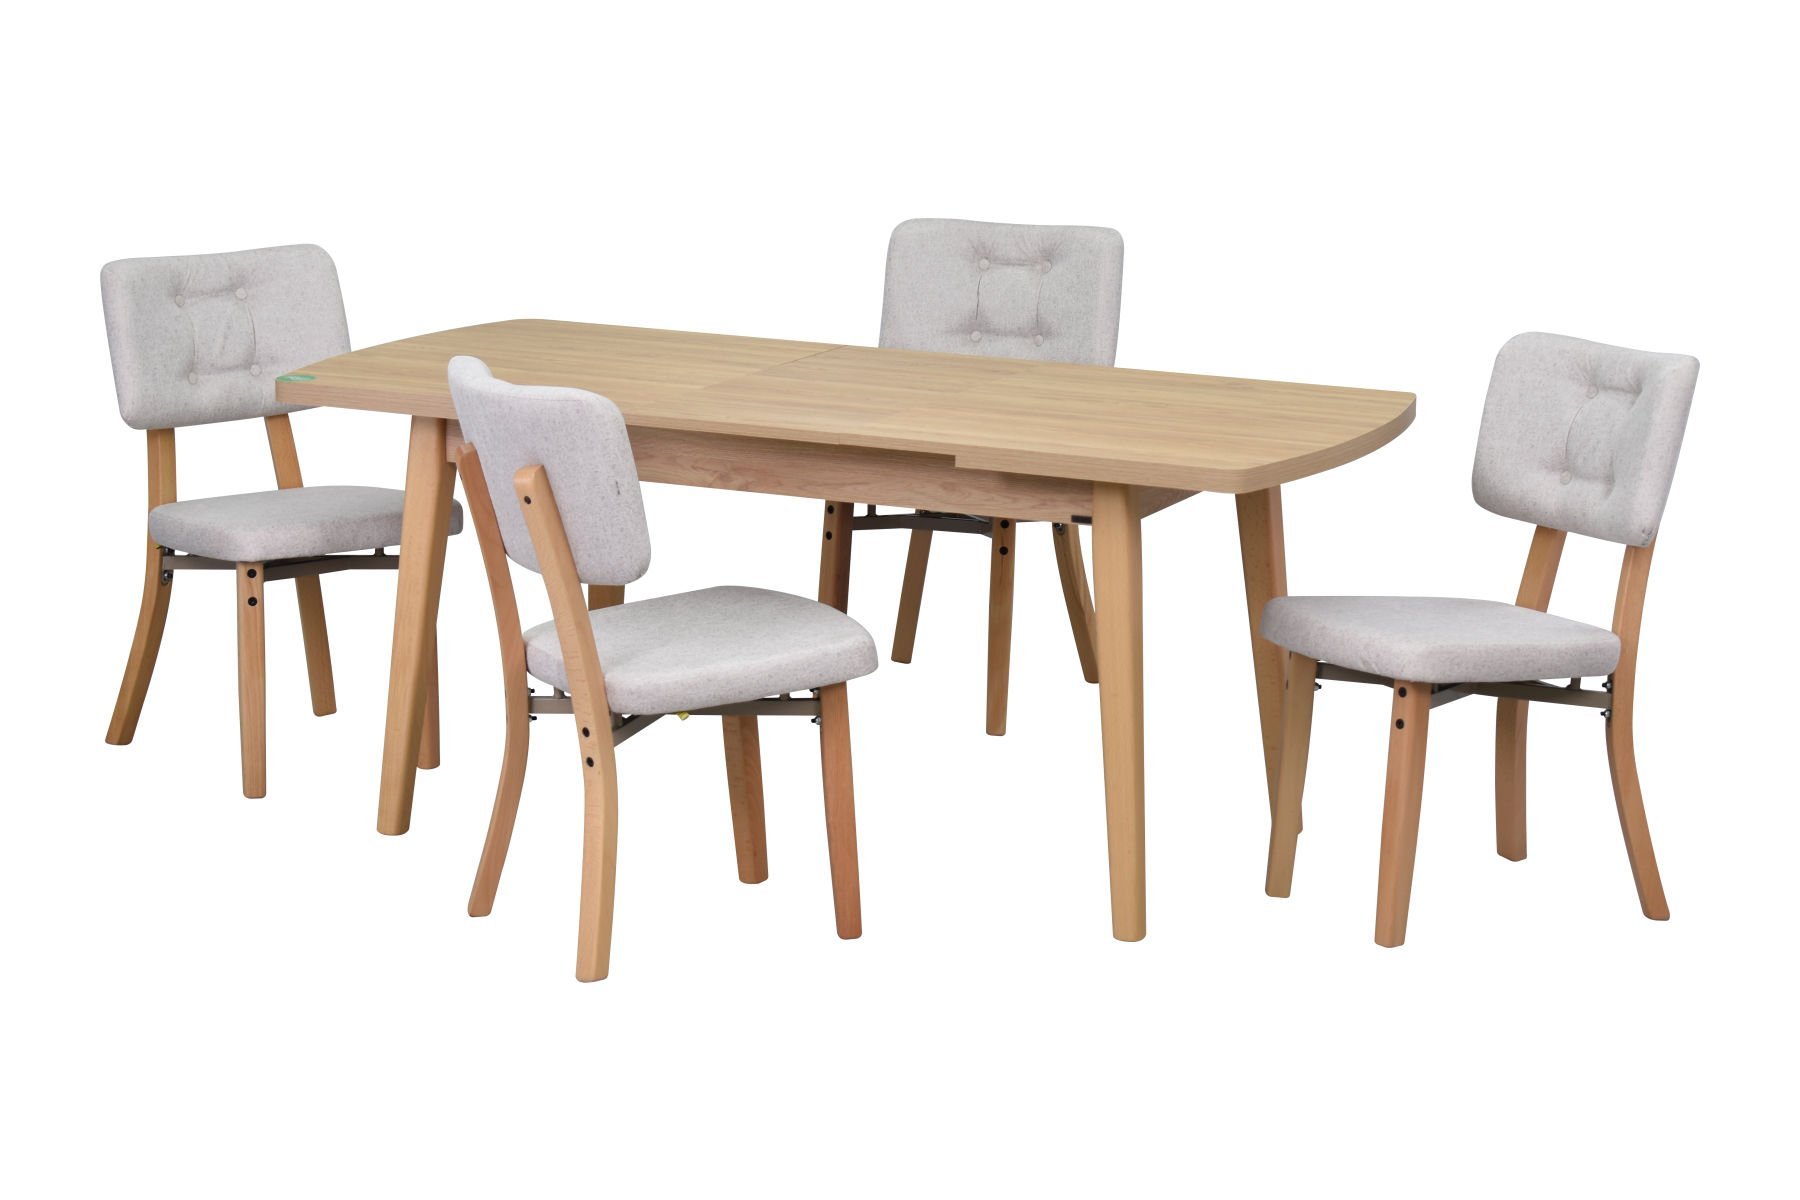 Mir Sandalye Aras Mutfak Masası Takımı - 80x140 cm